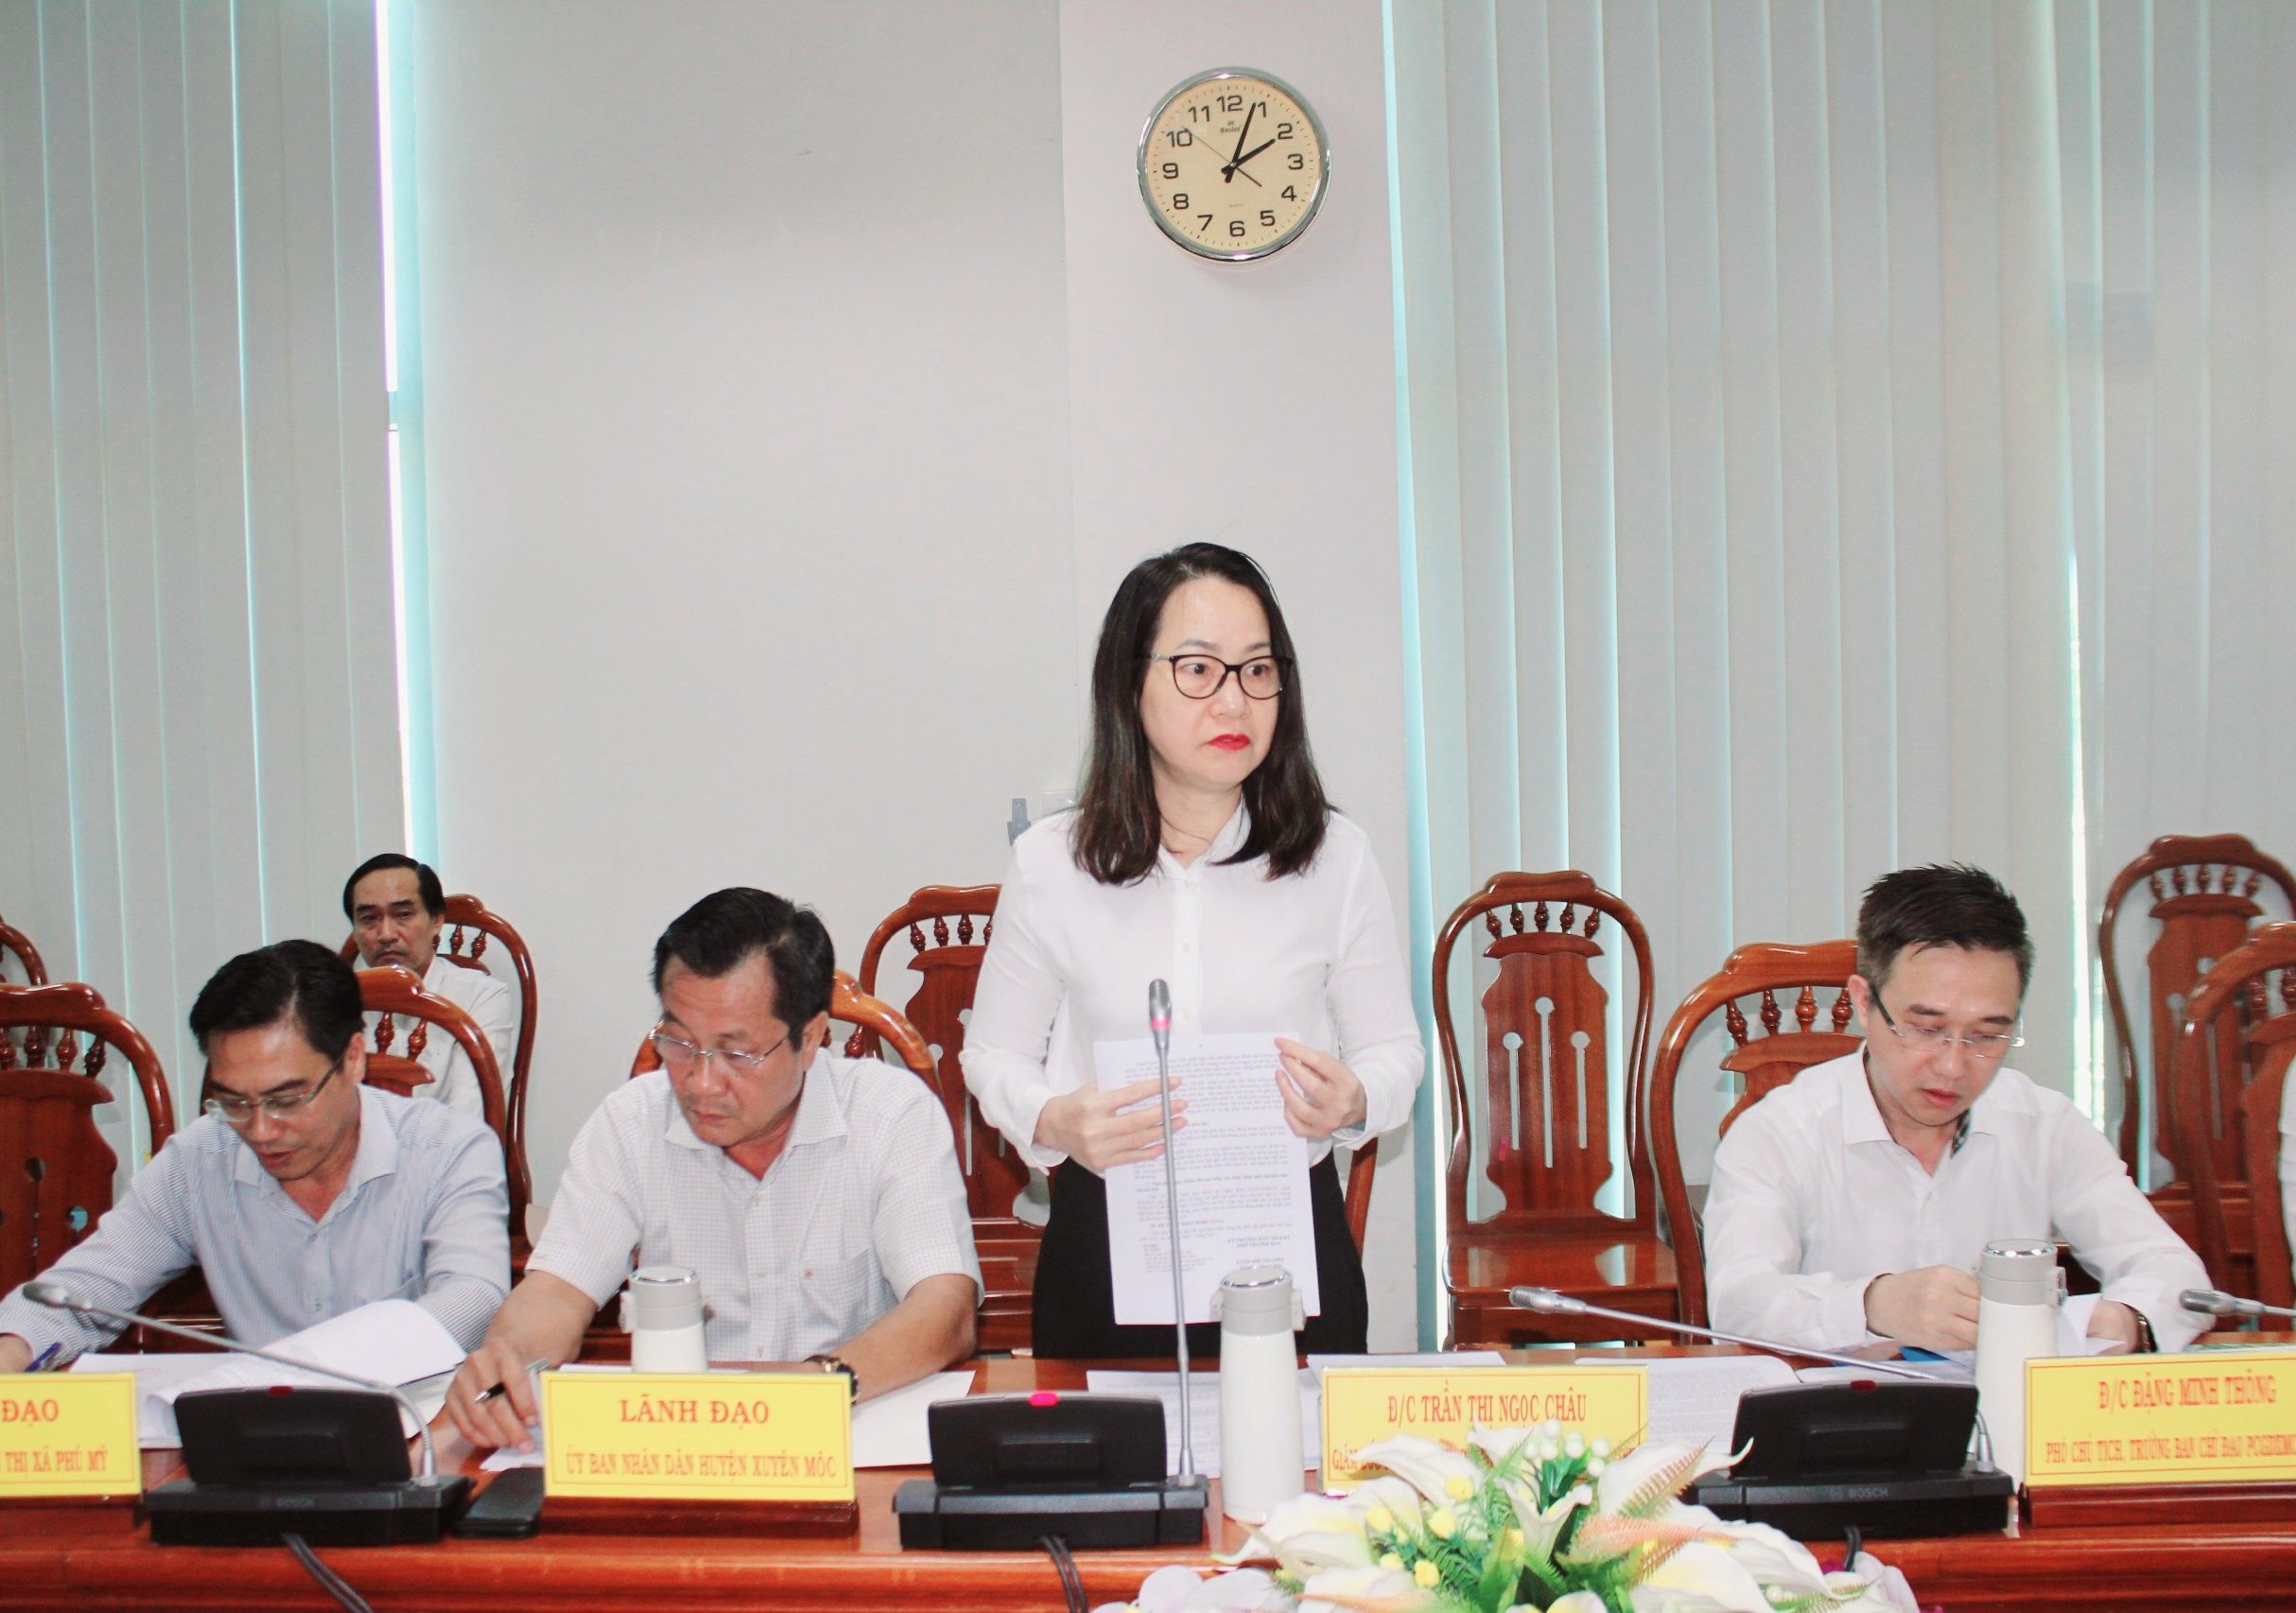 Bà Trần Thị Ngọc Châu báo cáo tại buổi làm việc.